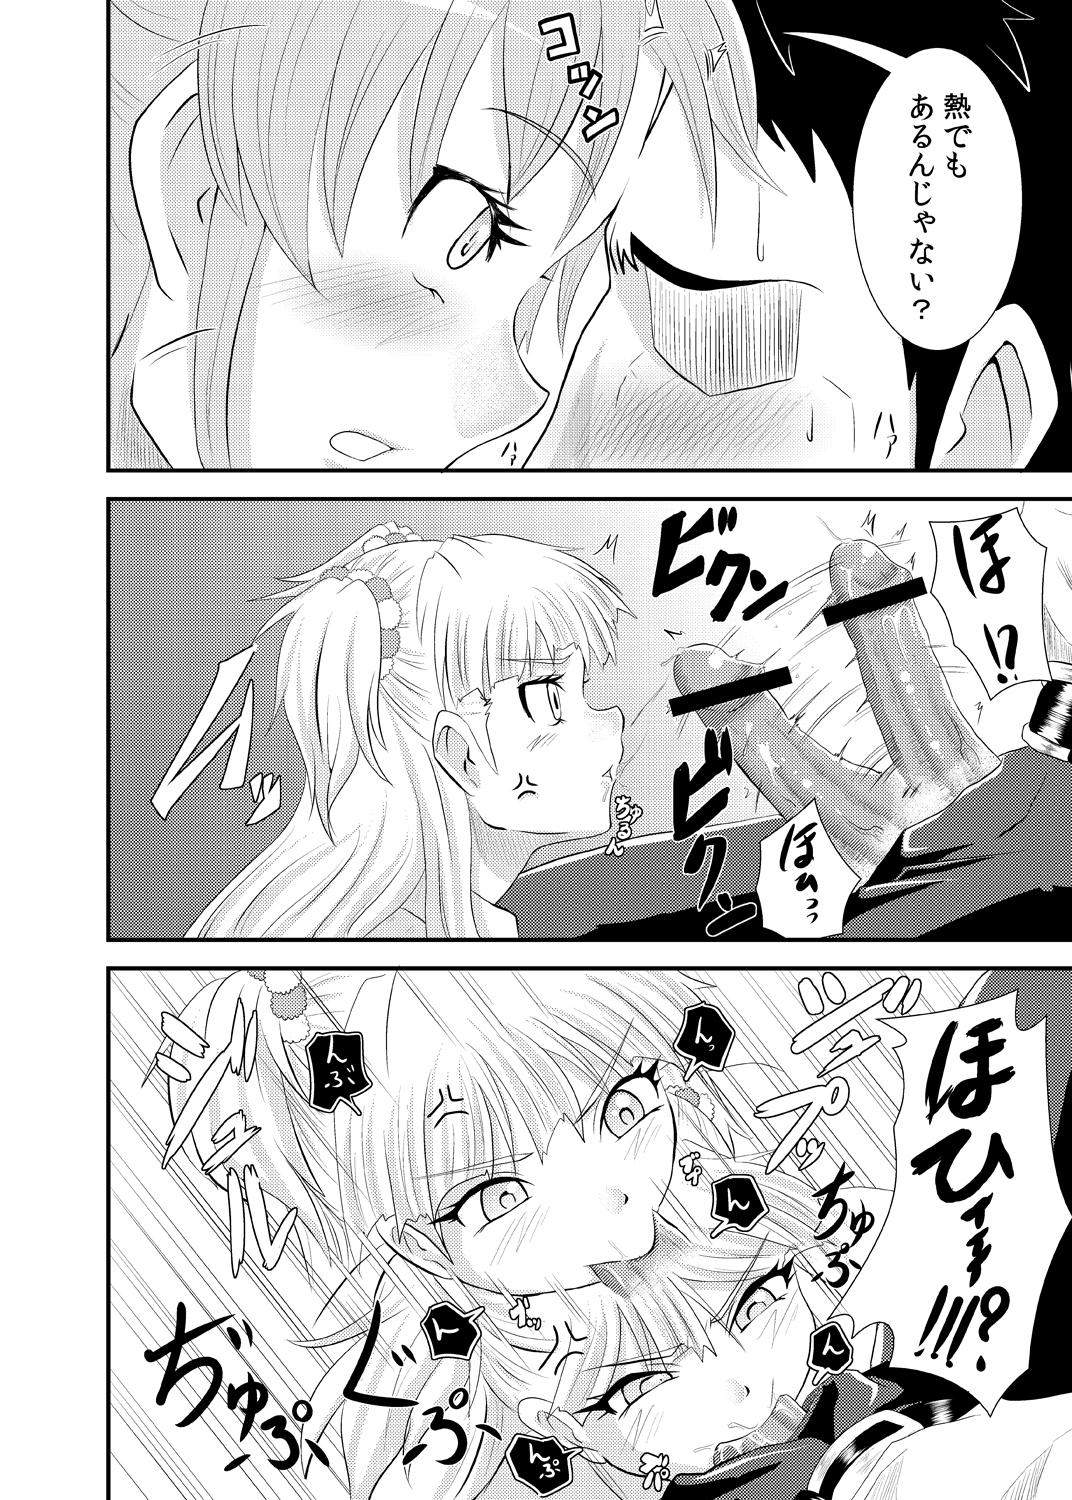 Groupfuck Rika-san no Manga. - The idolmaster Femboy - Page 8